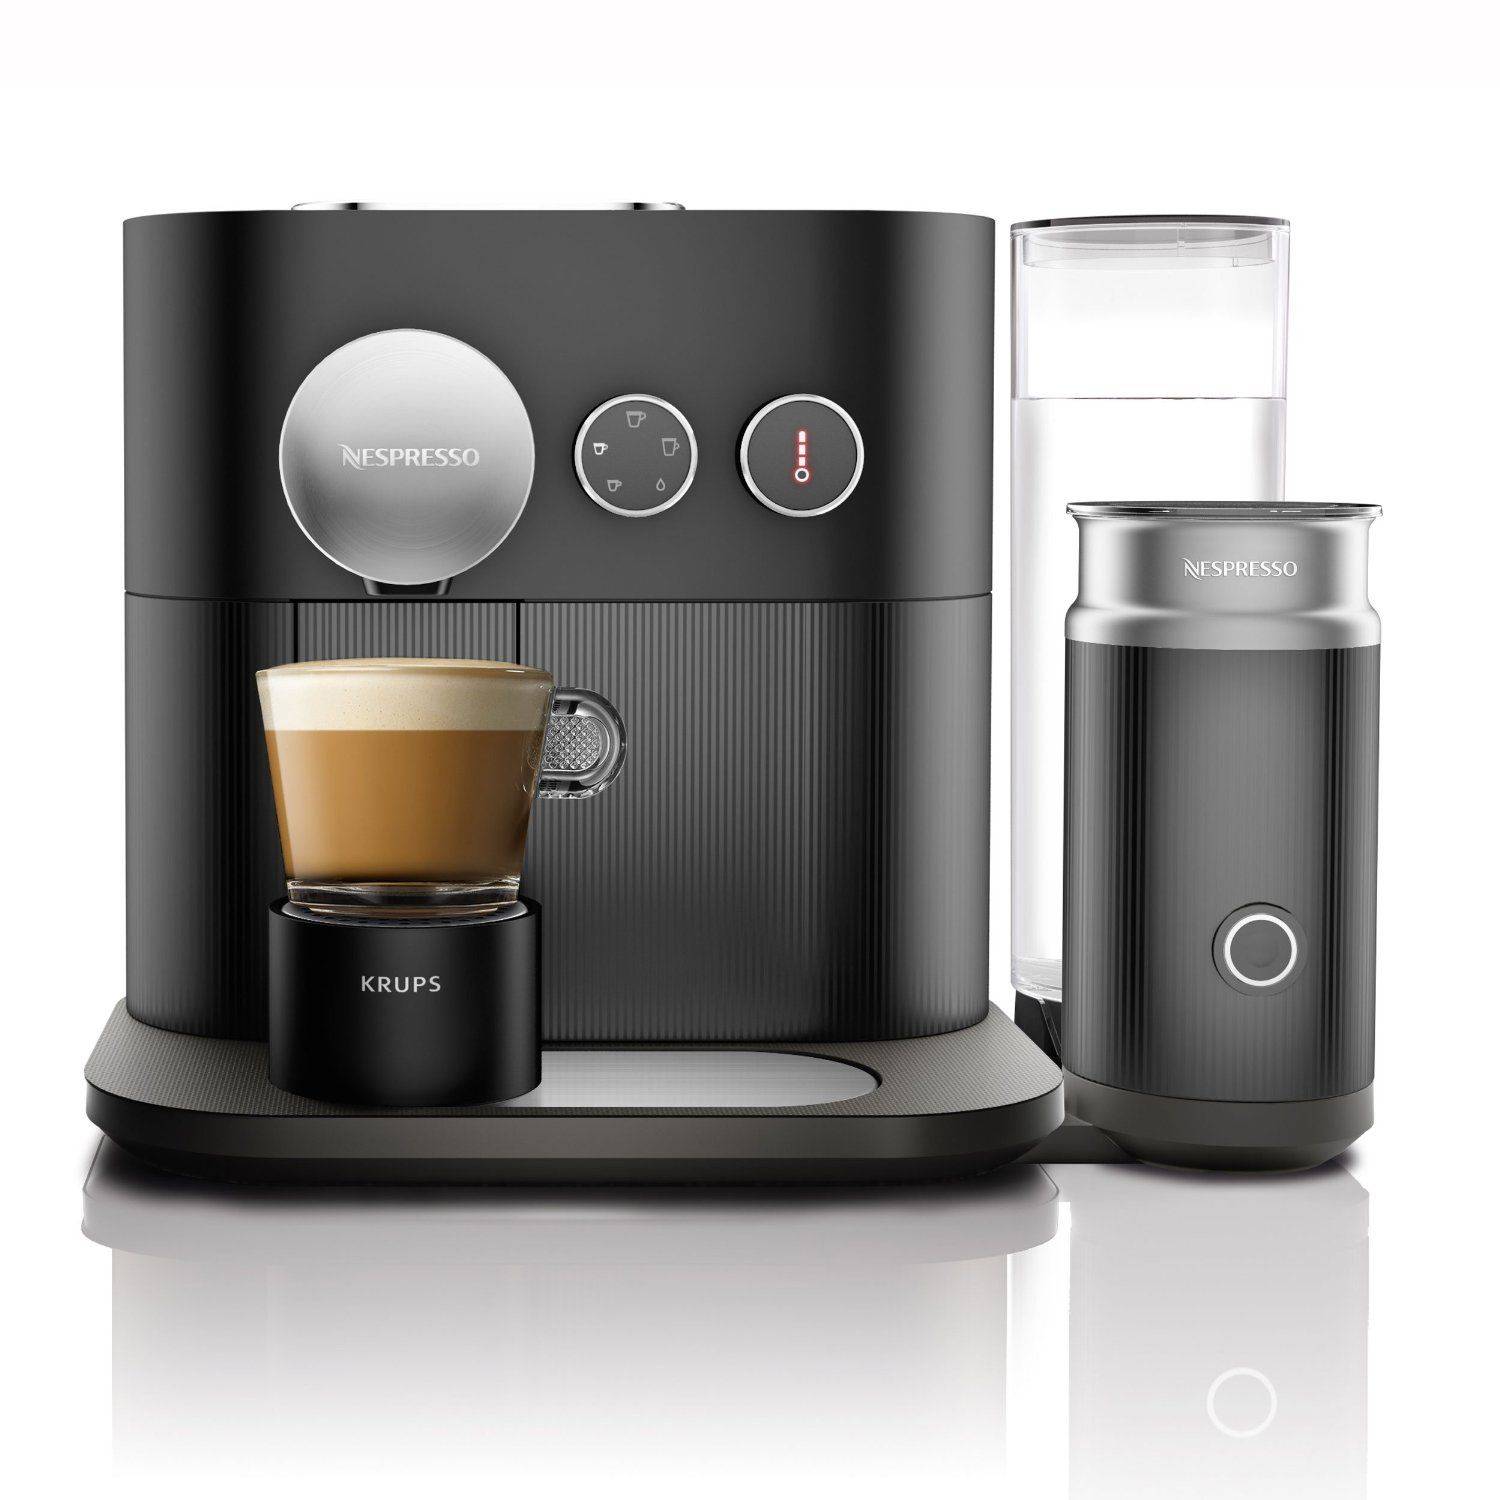 Как выбрать лучшую из кофемашин nespresso: в чем особенности таких аппаратов, на какие характеристики обращать внимание, обзор 7 популярных моделей, их плюсы и минусы